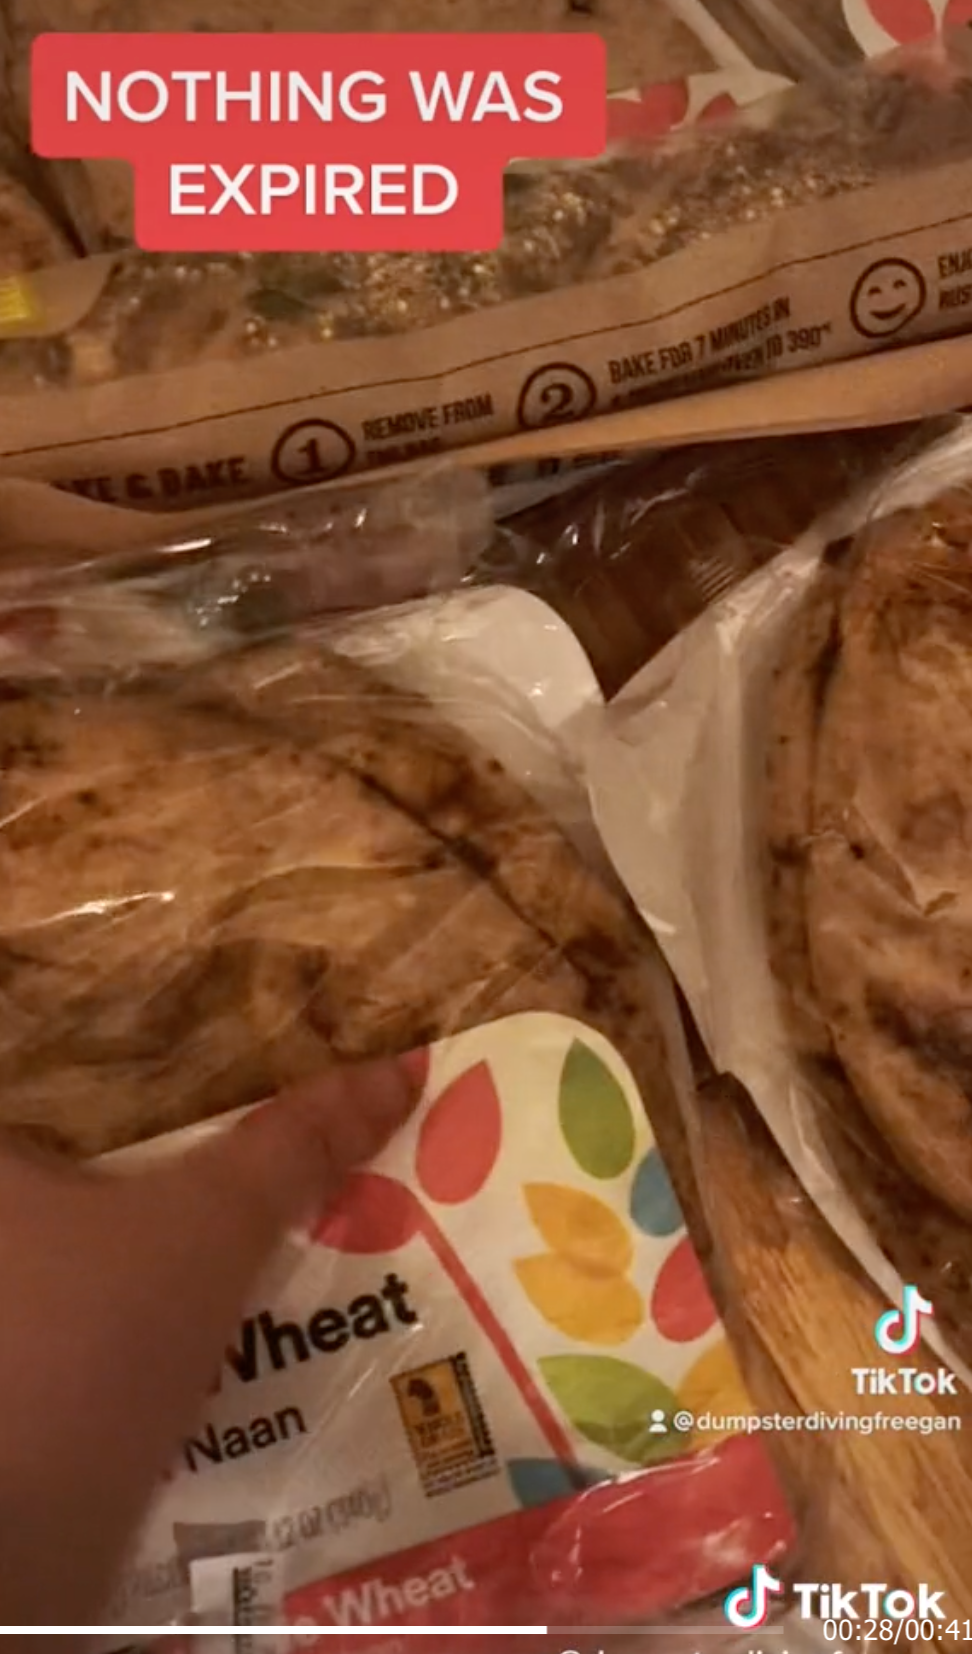 Un TikTokker encontró docenas de paquetes de alimentos de Whole Foods que no habían caducado en un contenedor de basura